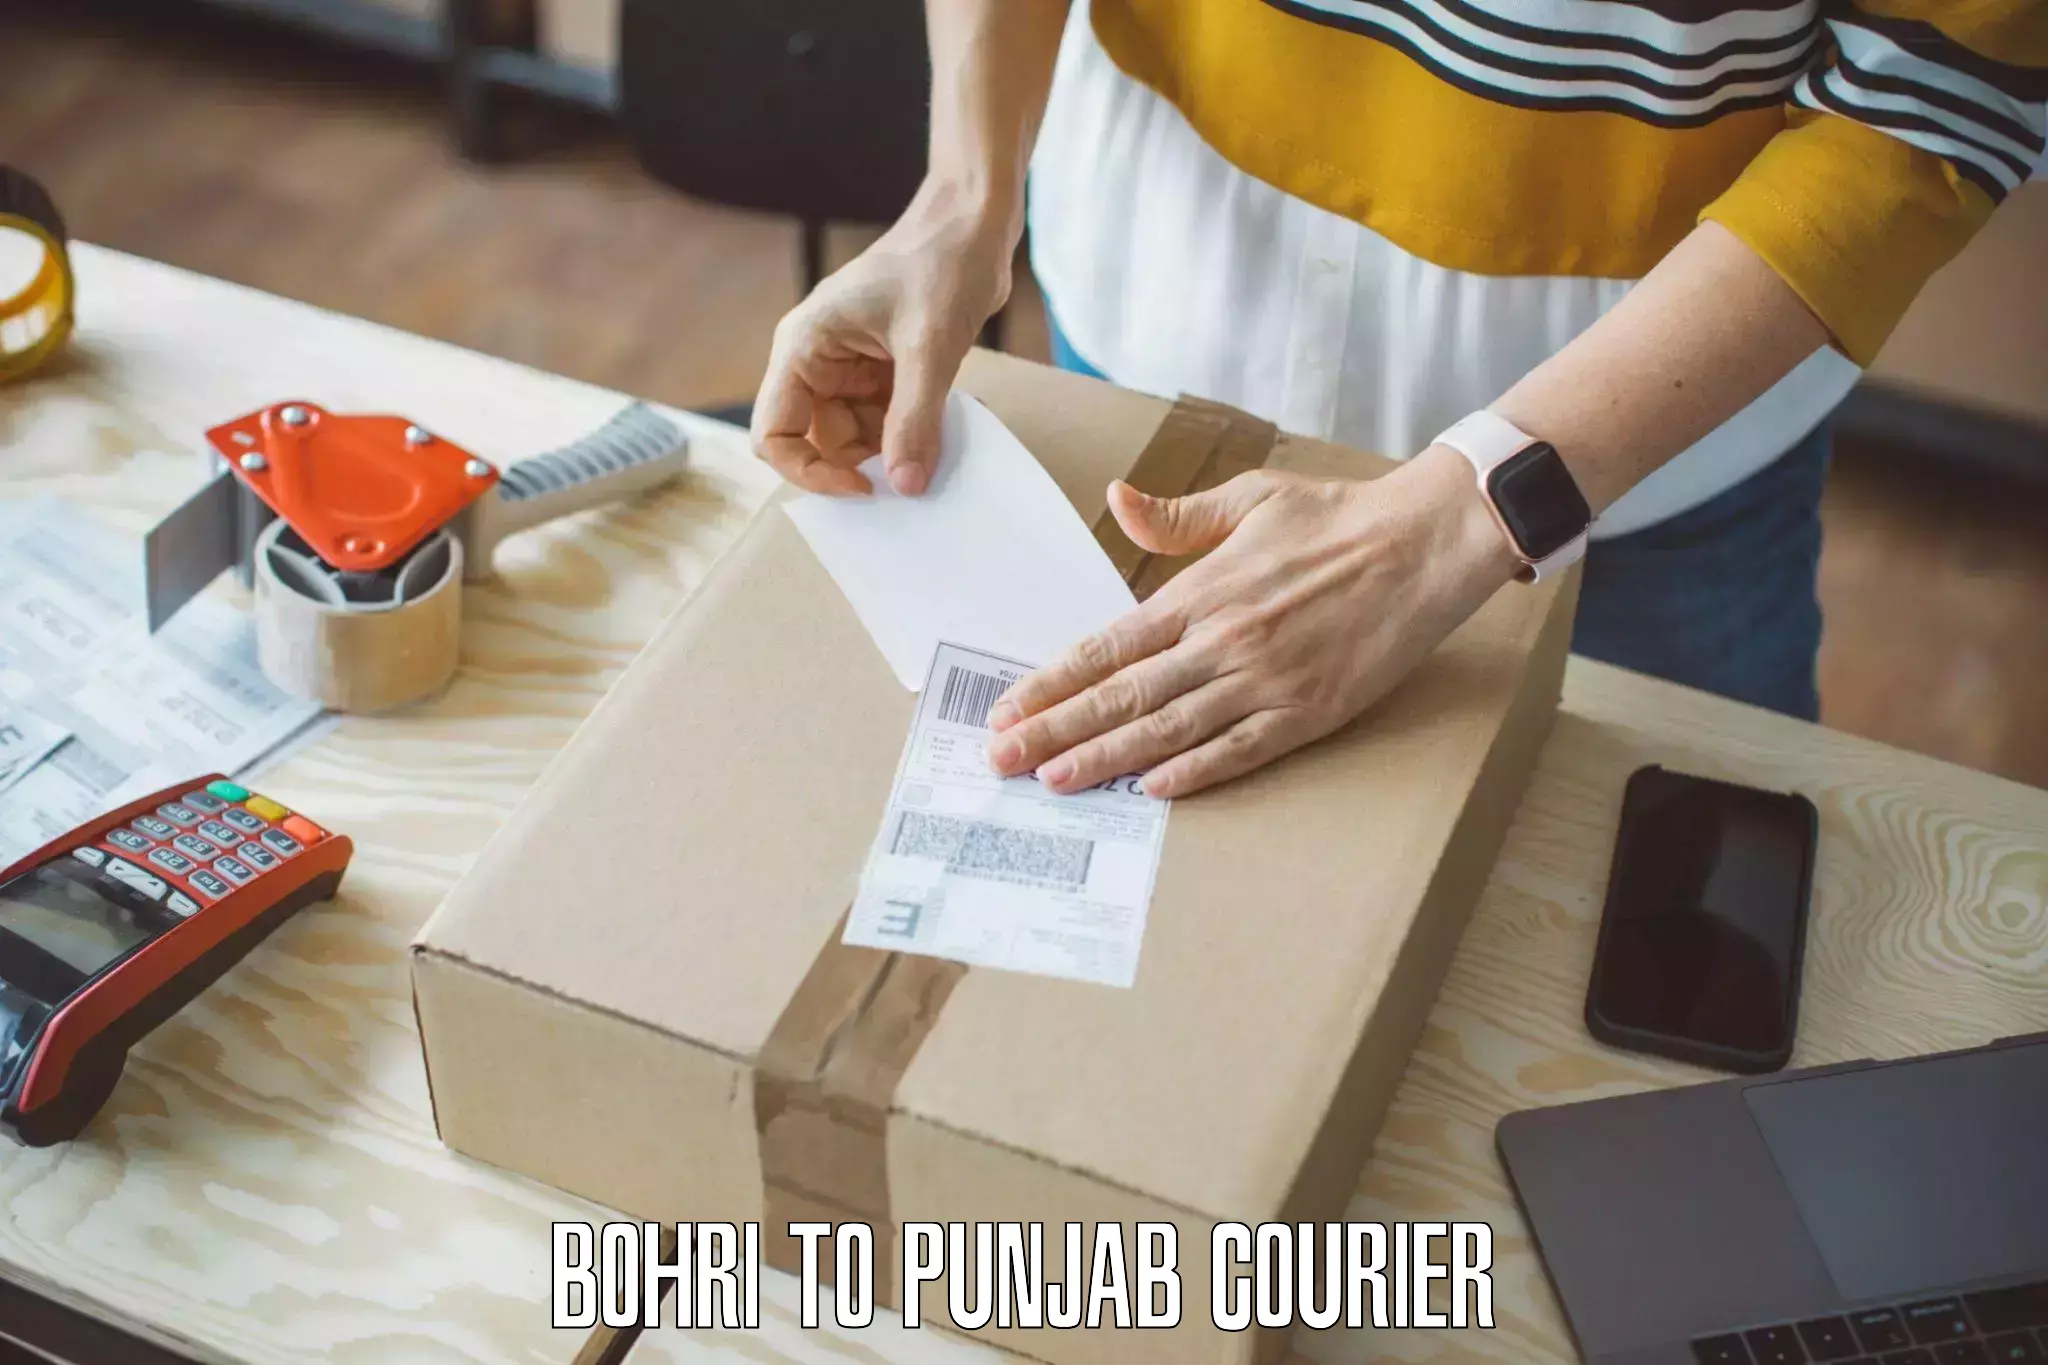 Furniture moving experts Bohri to Punjab